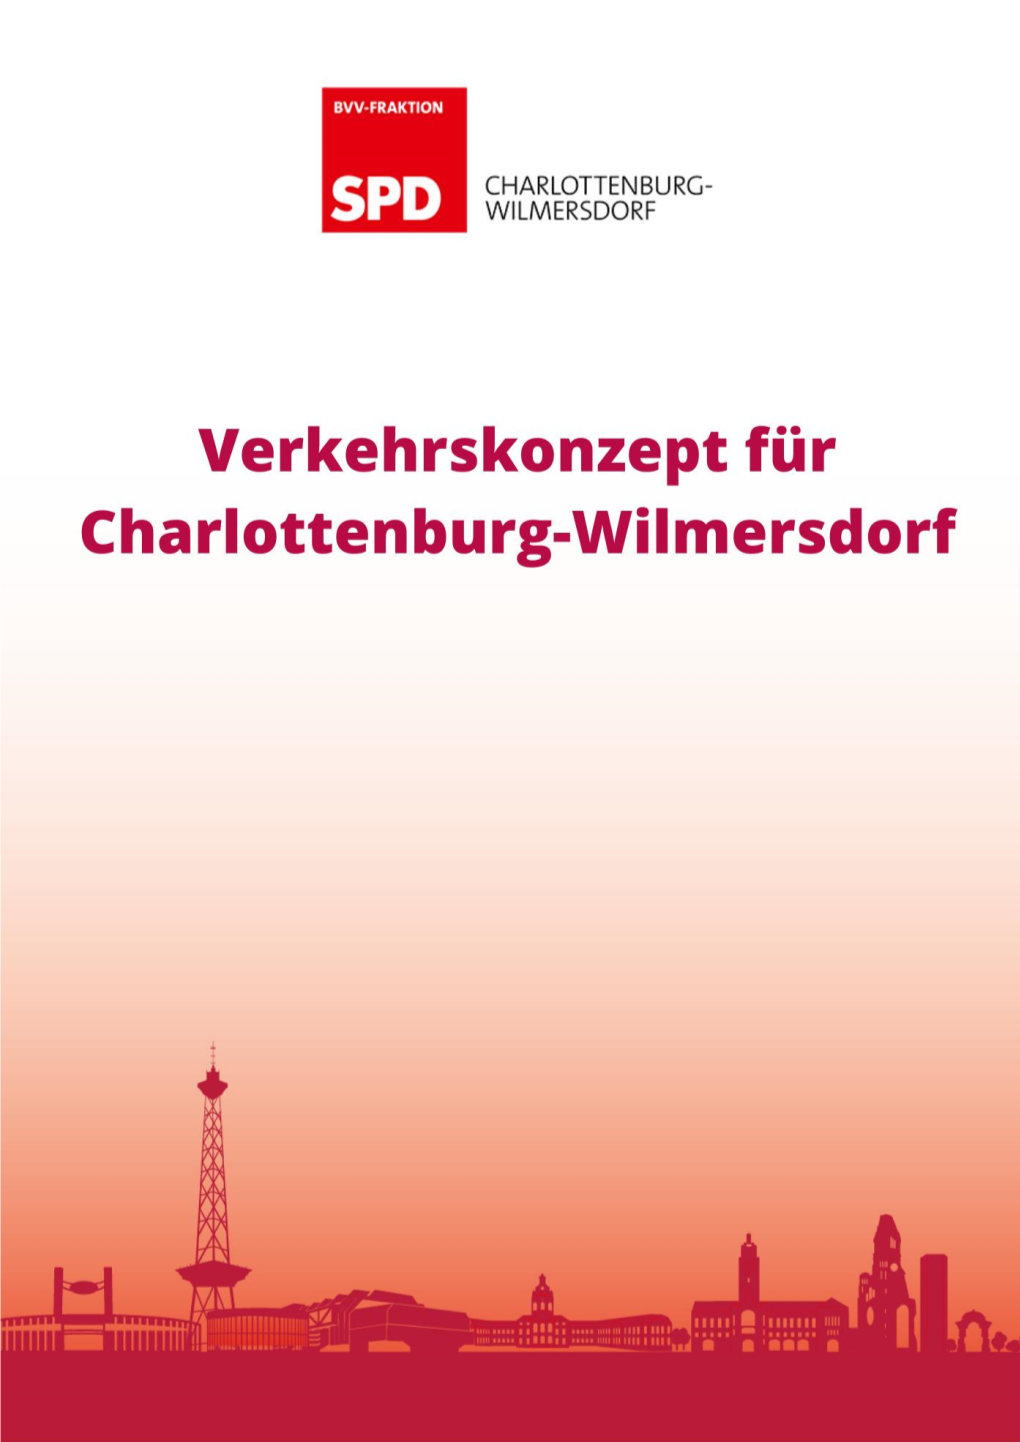 SPD-Verkehrskonzept Charlottenburg-Wilmersdorf